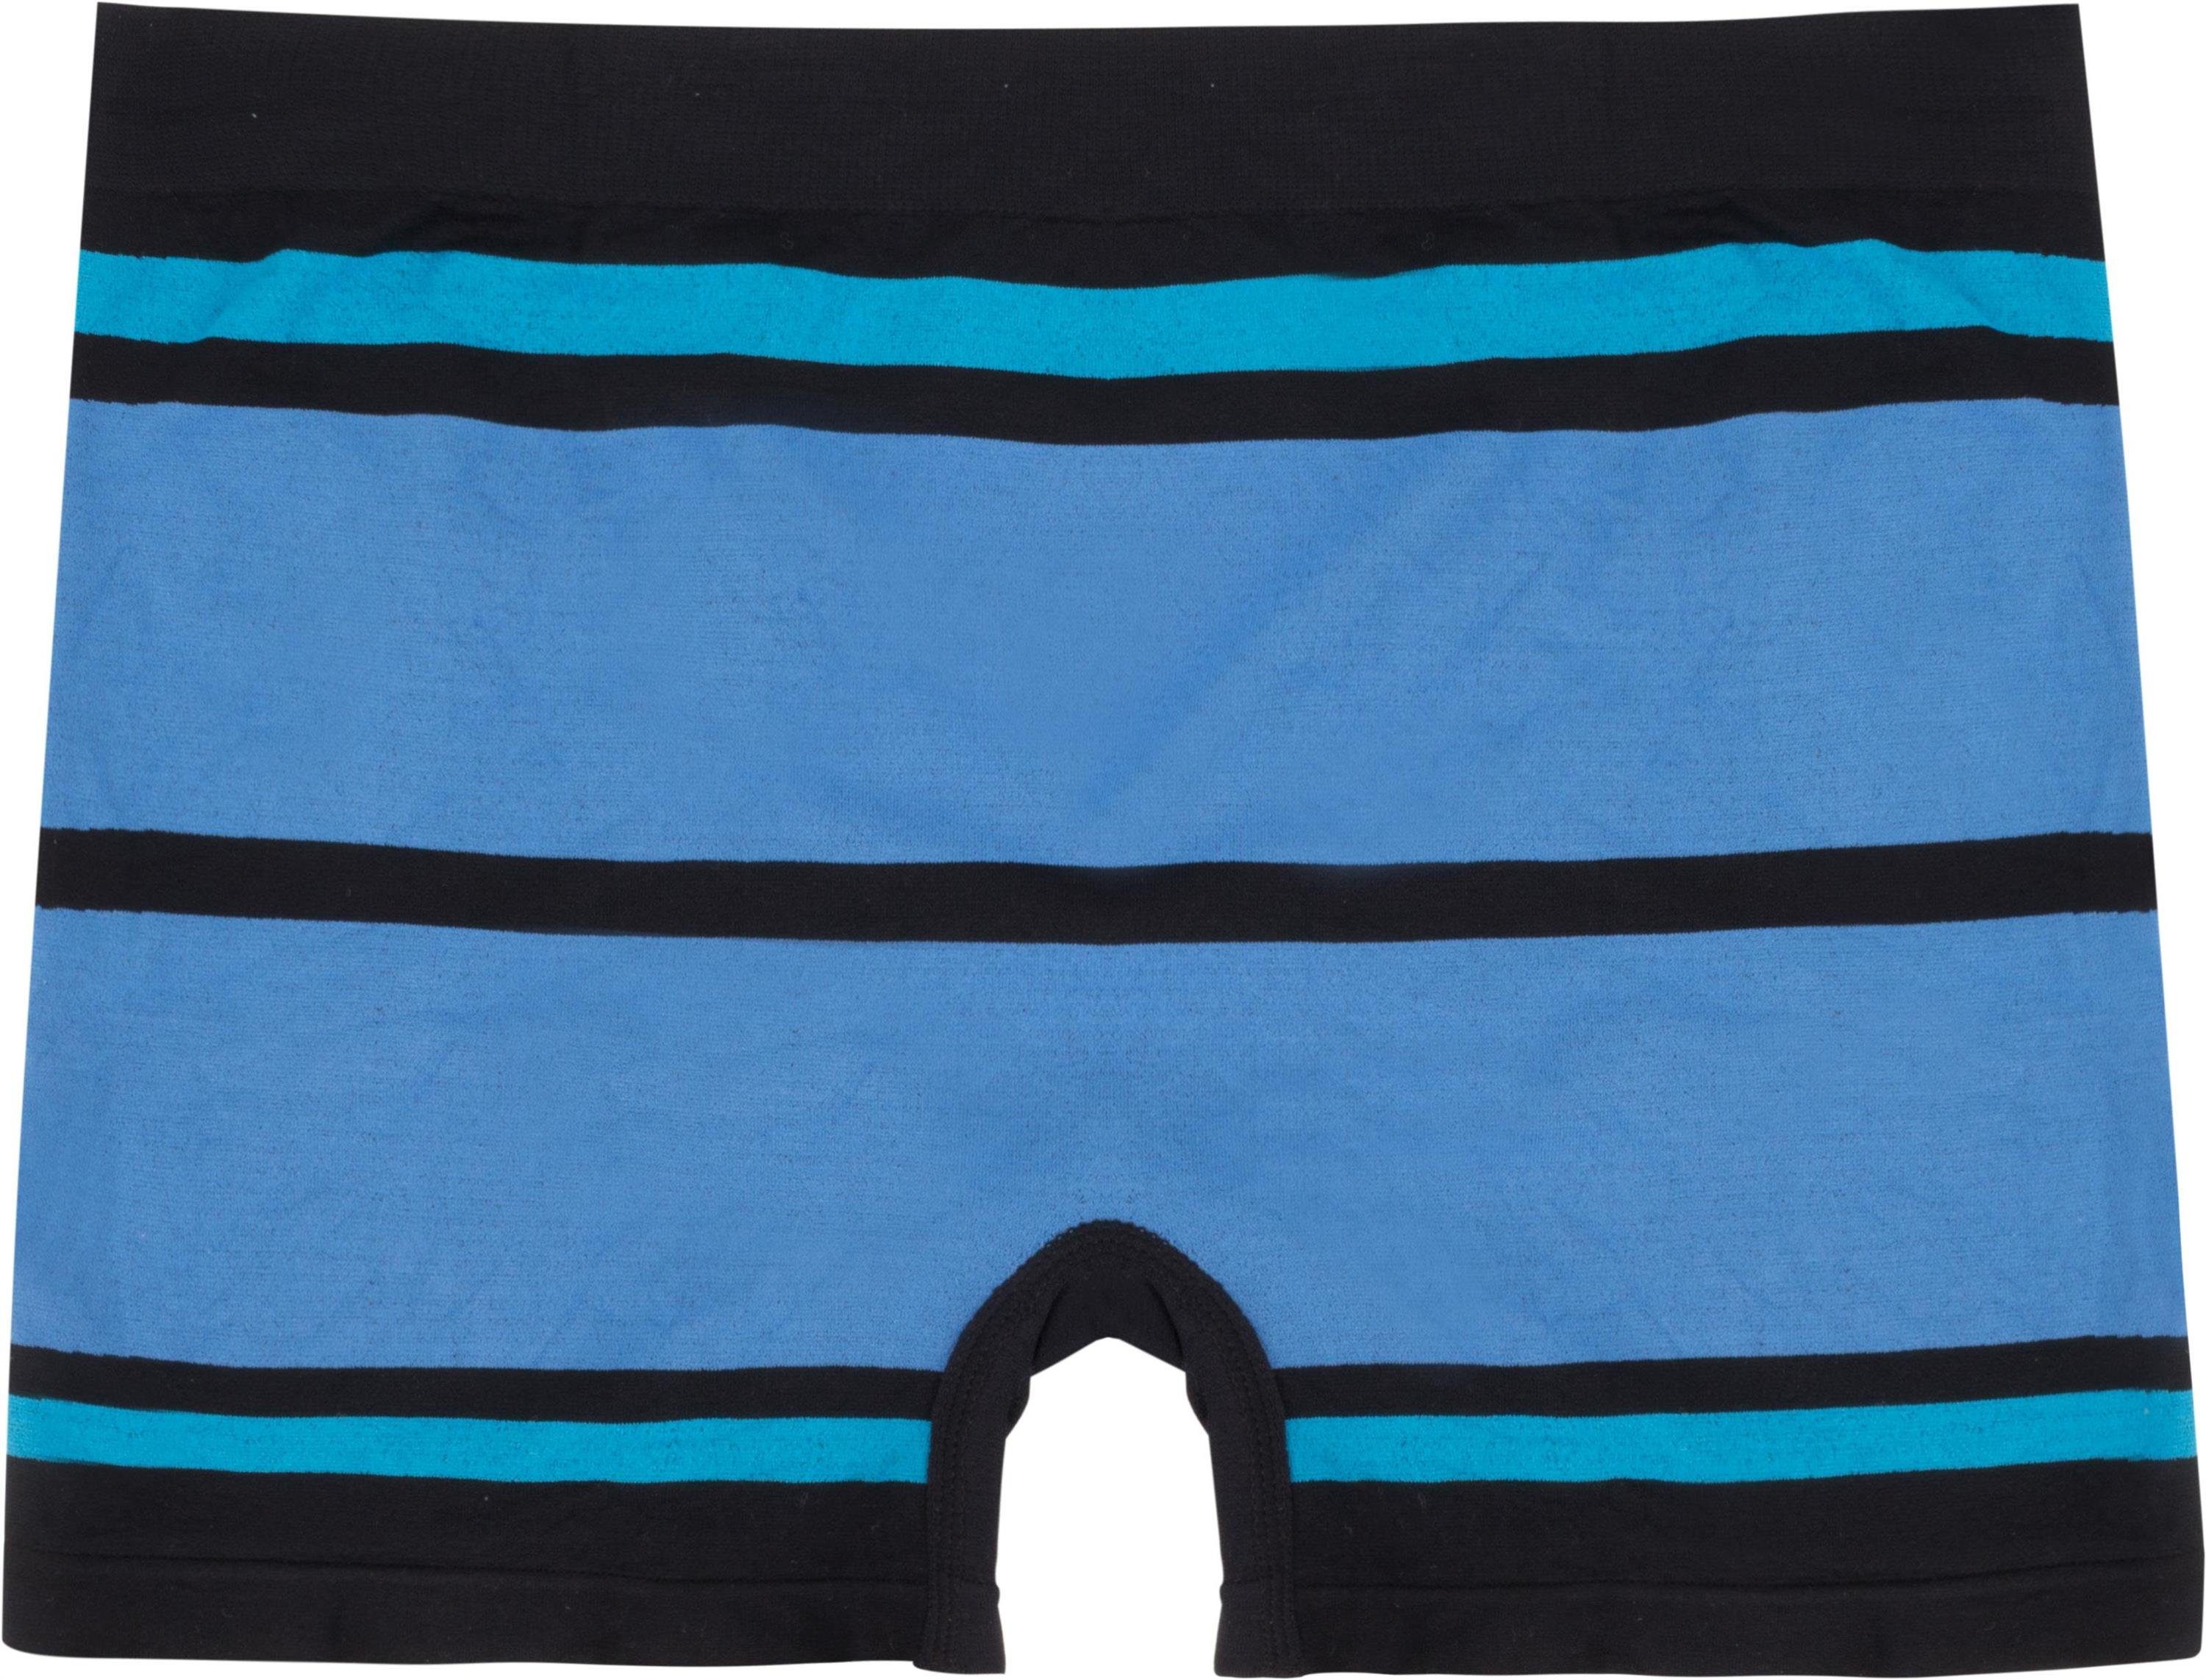 schnell Herren Unterhosen Boxer Material aus Retro trocknendem Blau/Hellblau normani Sport